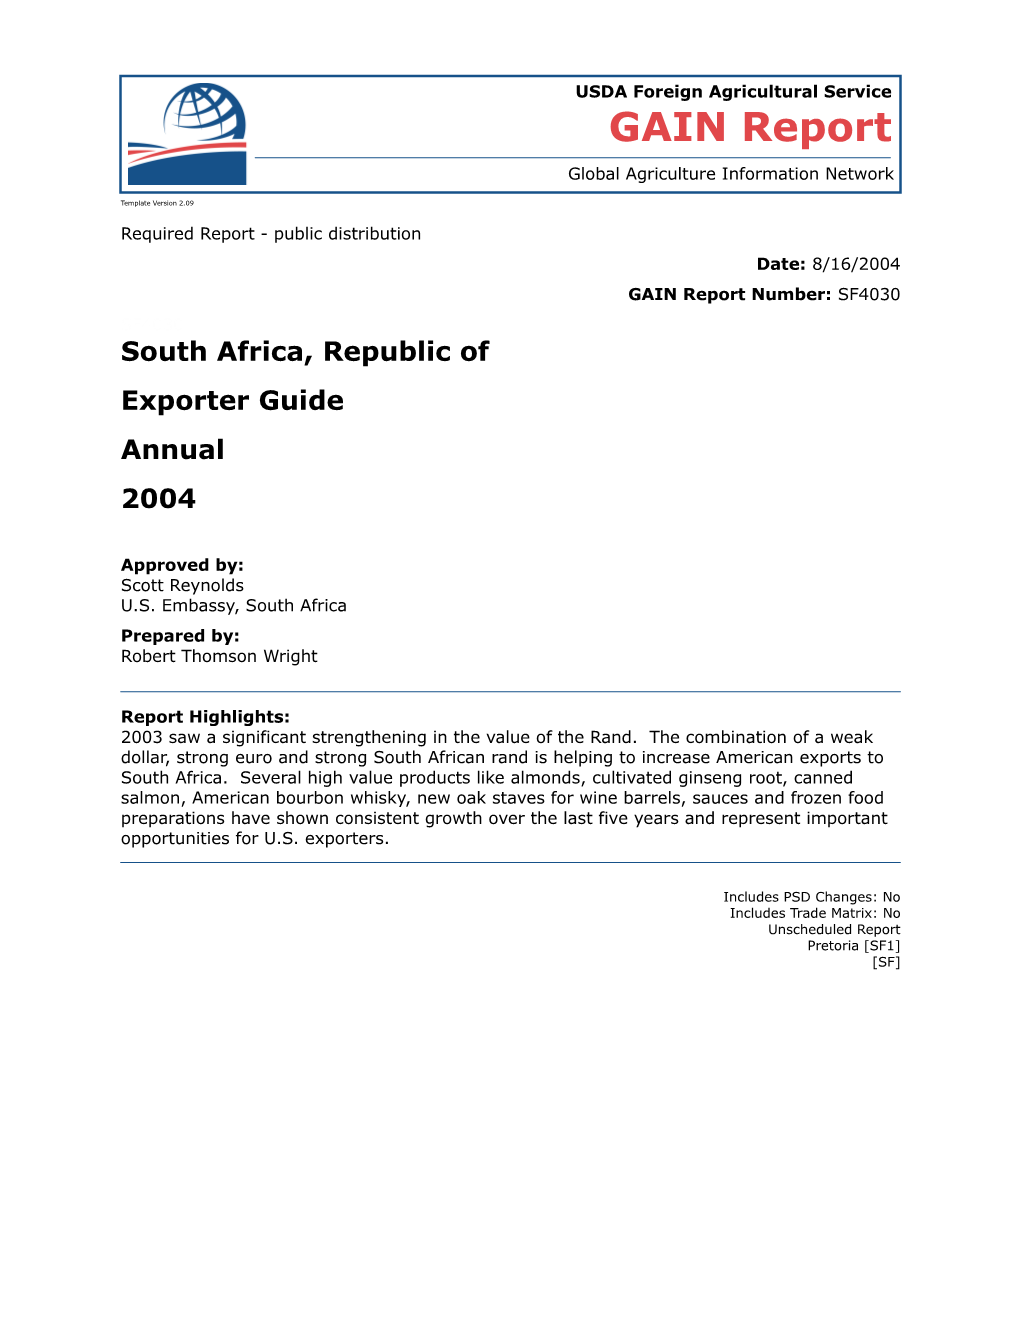 2004 SA Exporter Guide